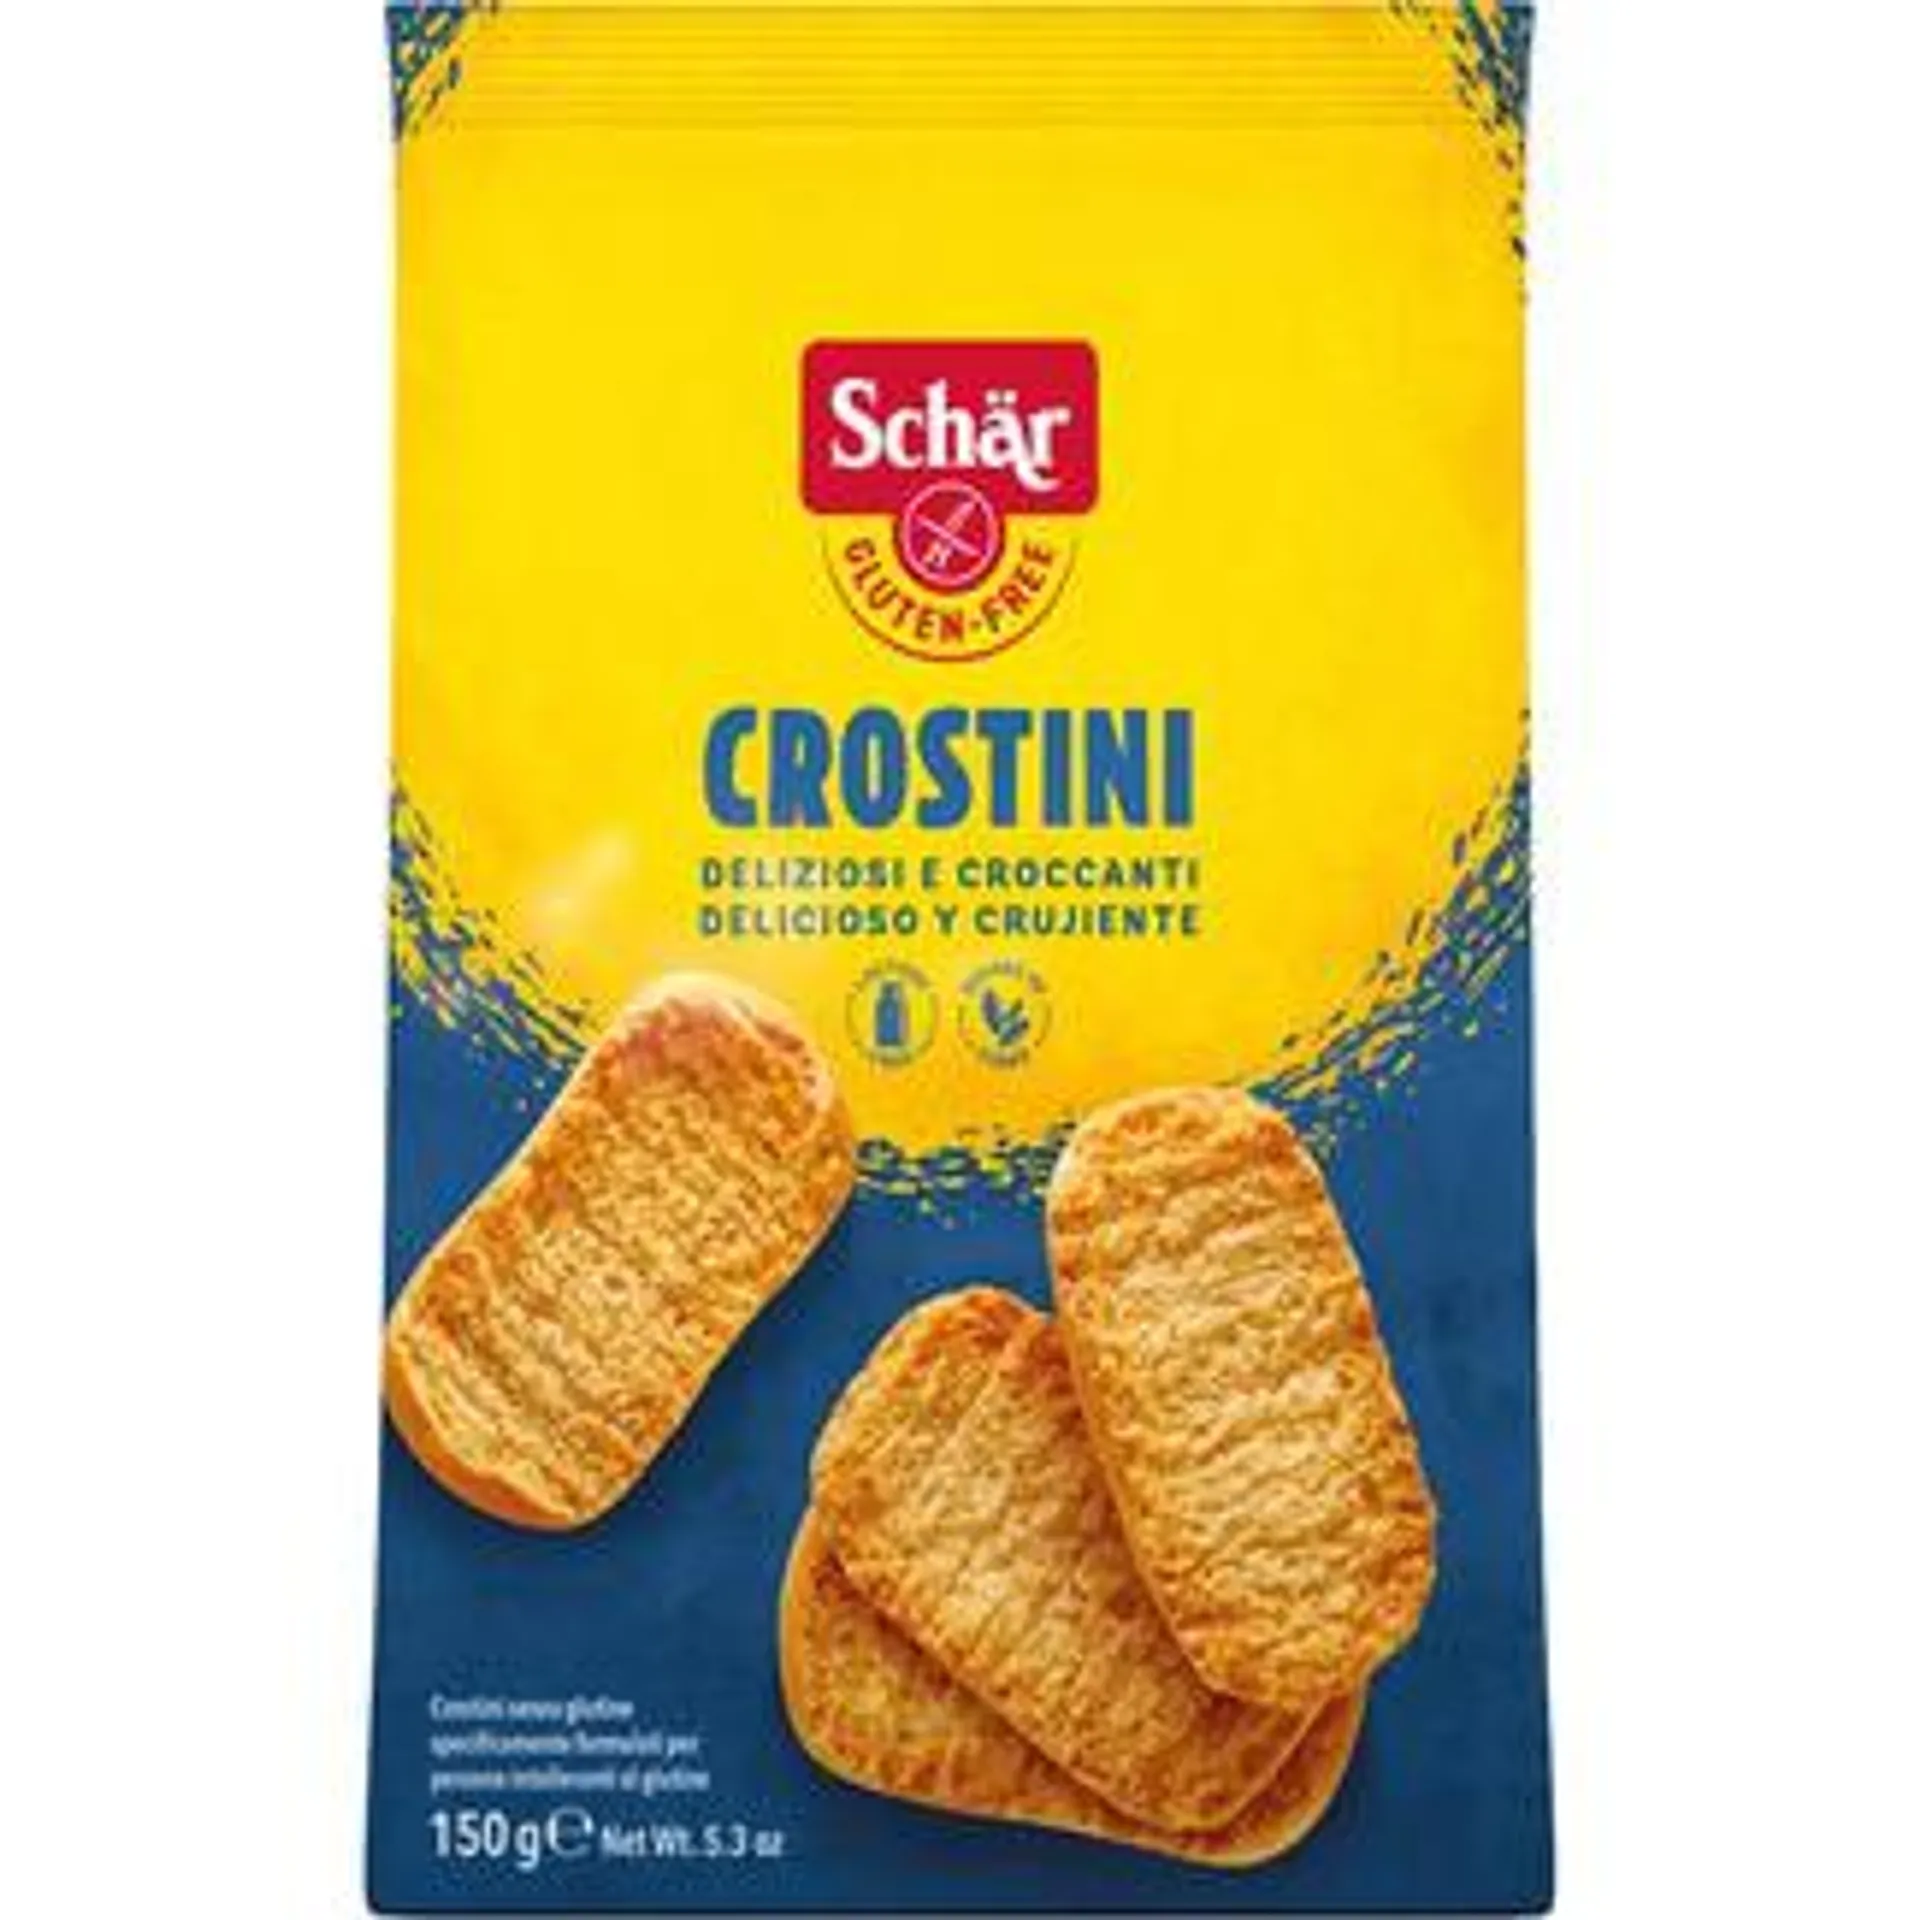 SCHAR Crostini panecillos tostados sin gluten y sin lactosa envase 150 g